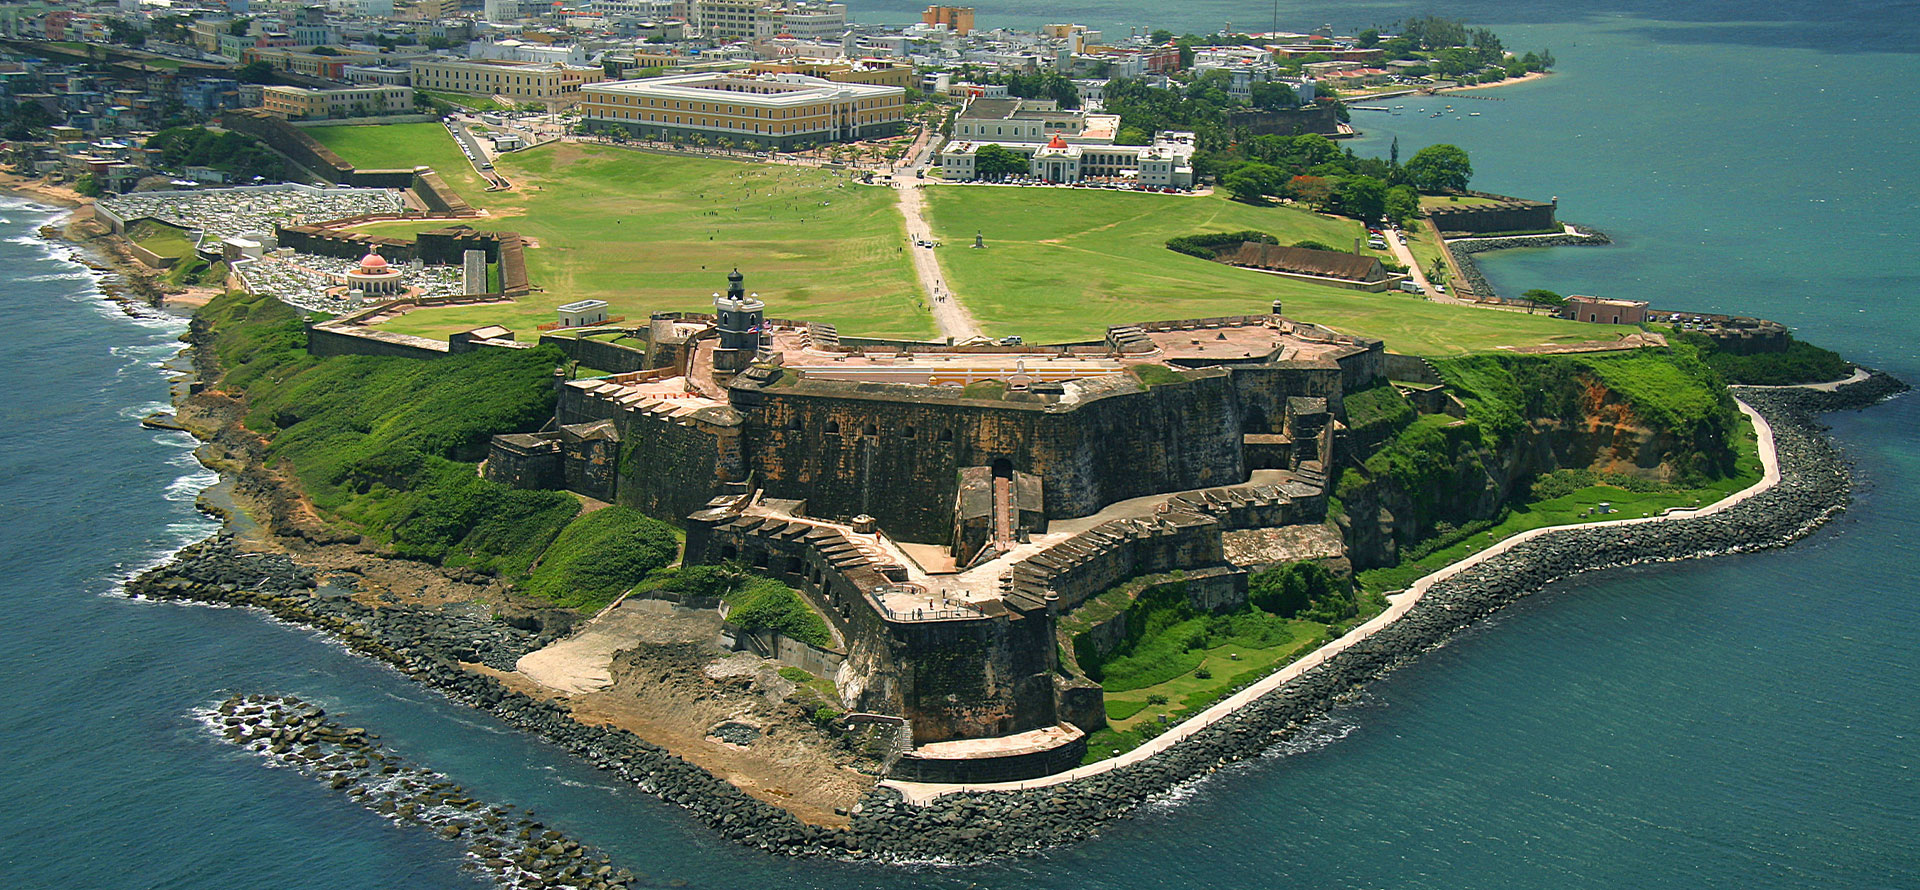 Puerto rico vs Hawaii landscape.